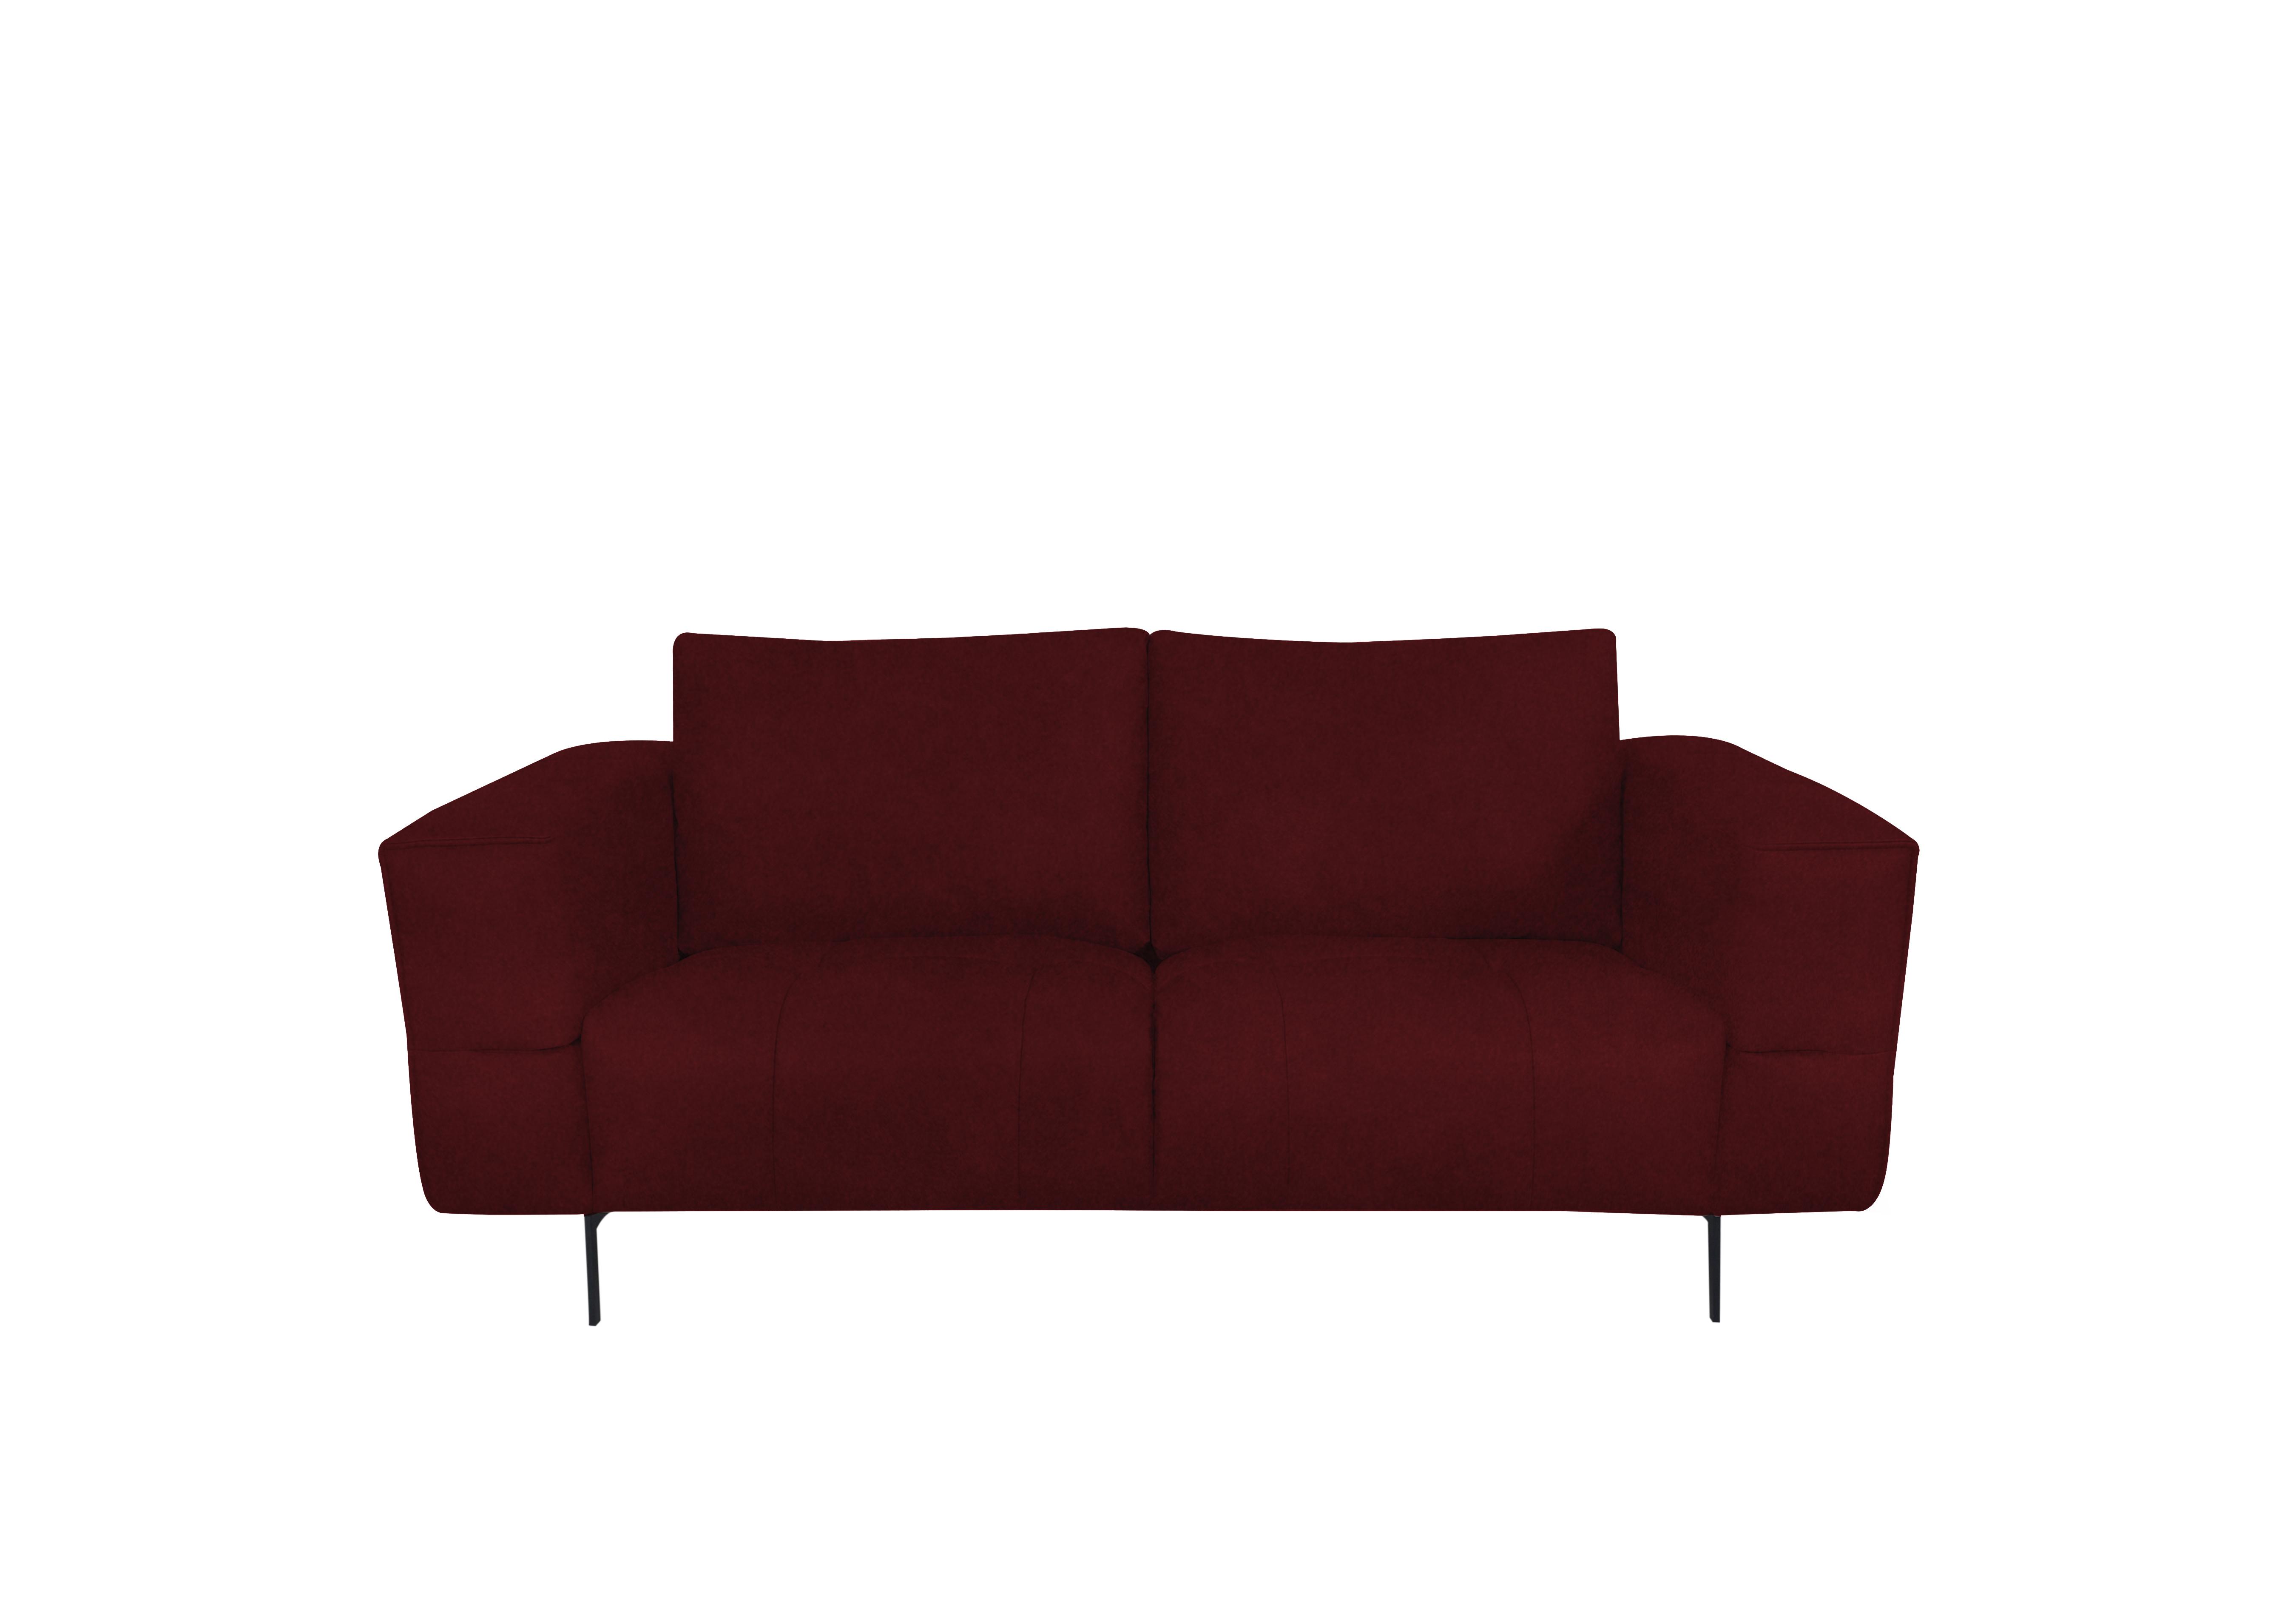 Lawson 2 Seater Fabric Sofa in Fab-Meg-R65 Burgundy on Furniture Village